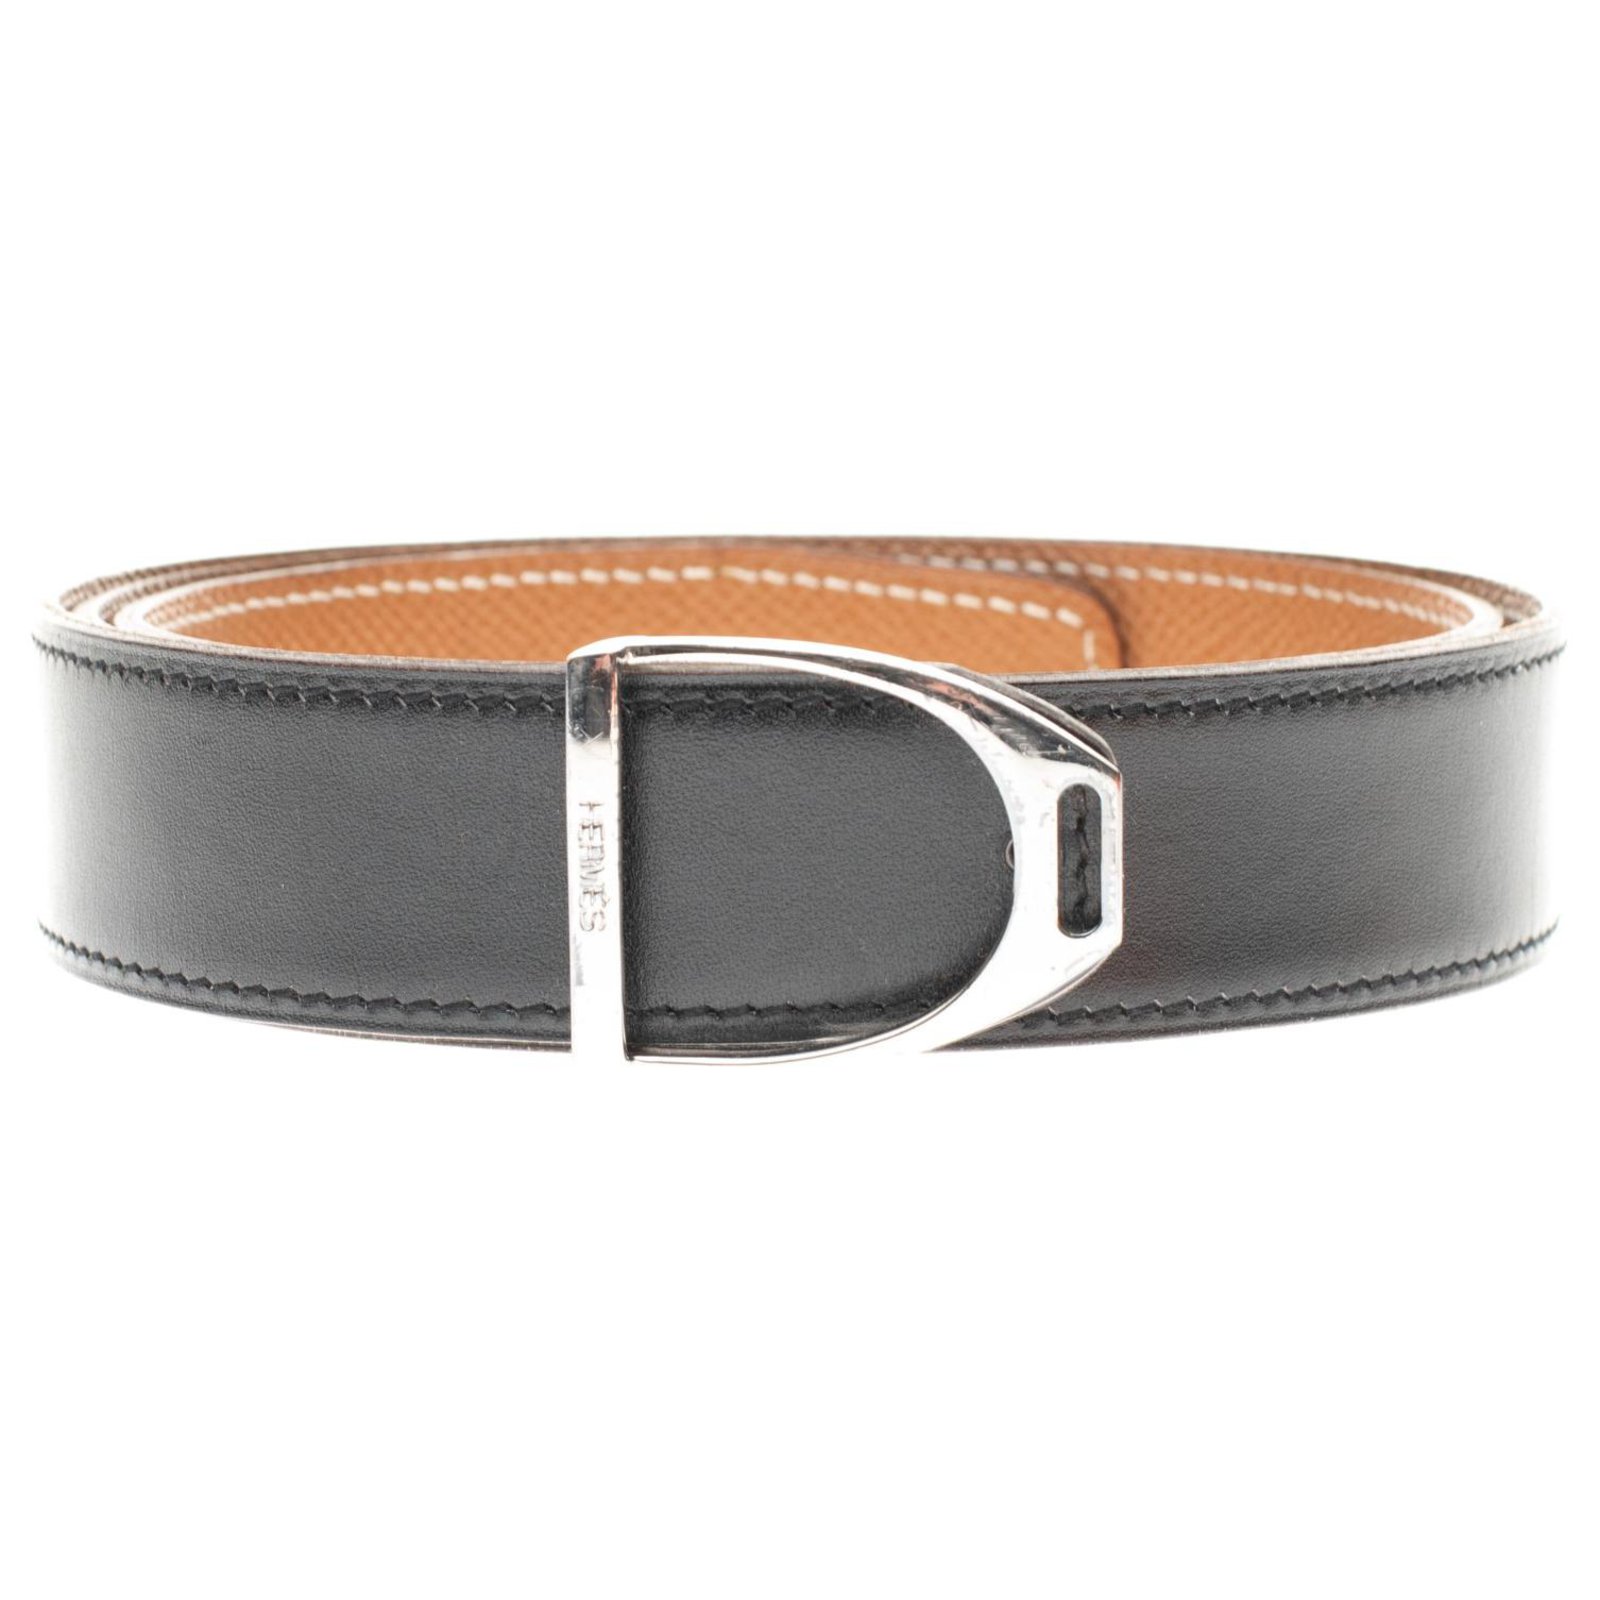 Etrier belt in black box leather 